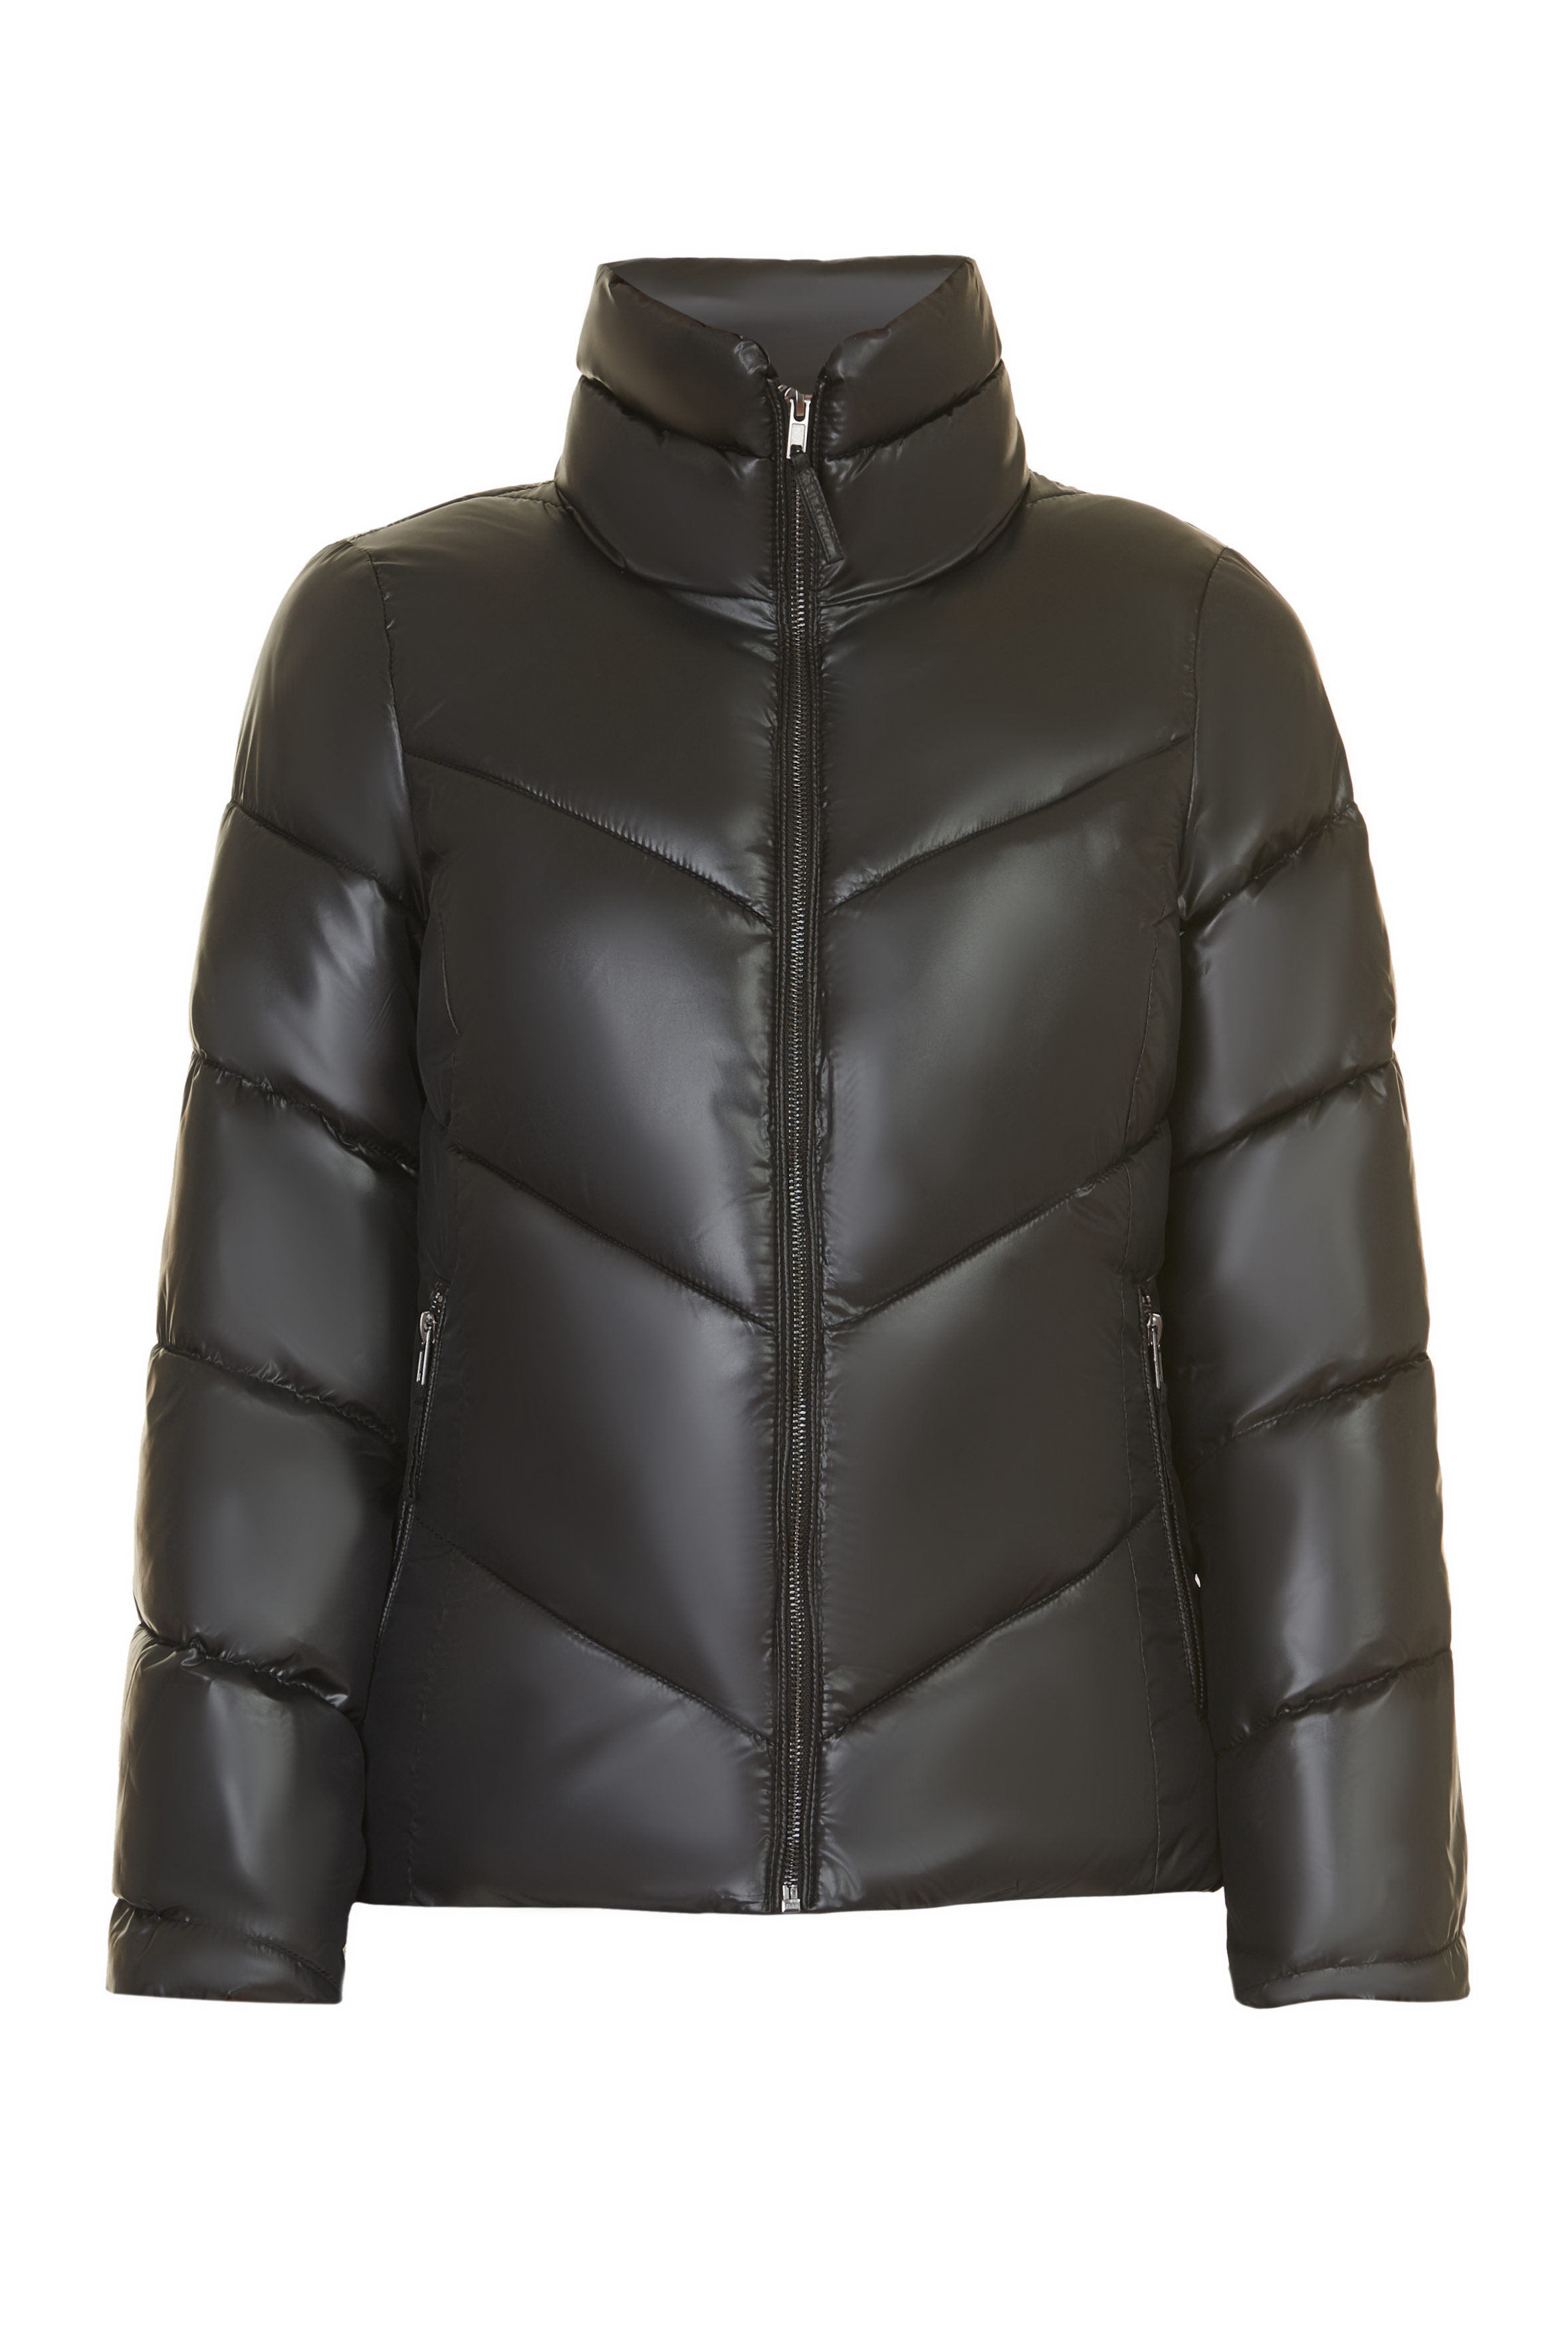 Укороченная дутая куртка (арт. baon B037565), размер S, цвет черный Укороченная дутая куртка (арт. baon B037565) - фото 3